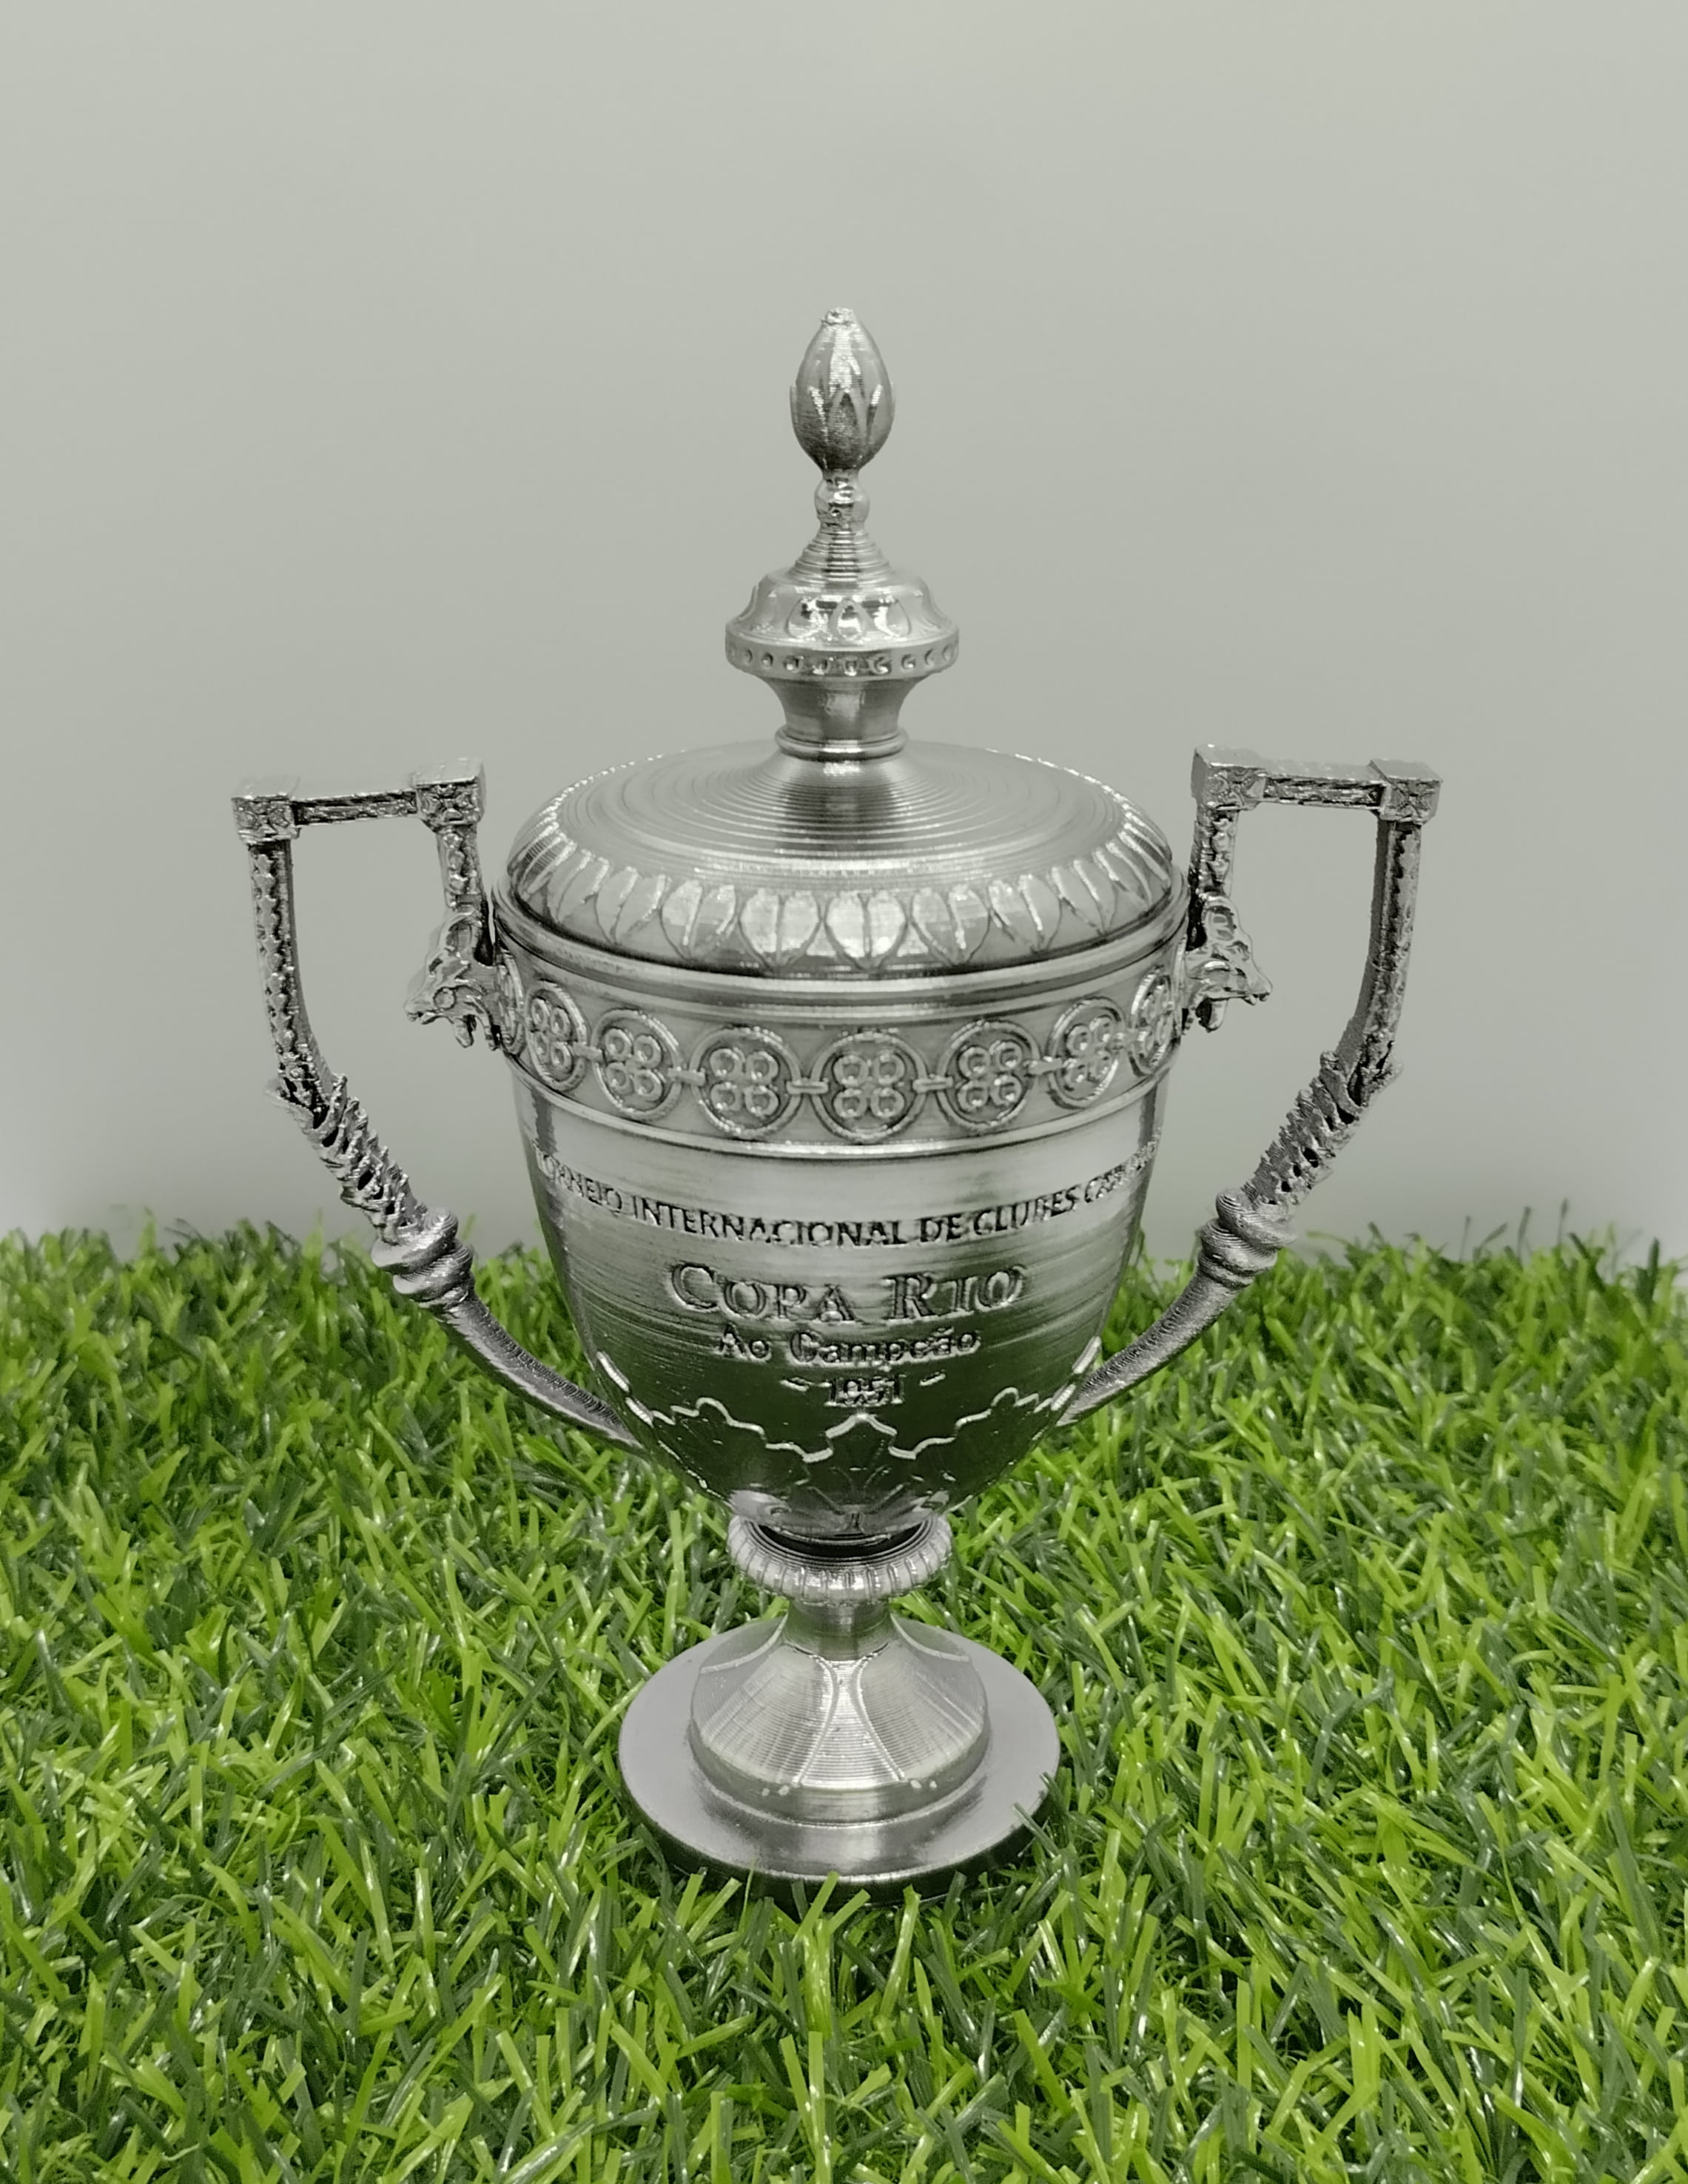 Miniatura taça (troféu) Copa Rio (mundial de clubes) 1951 - 15cm - por encomenda